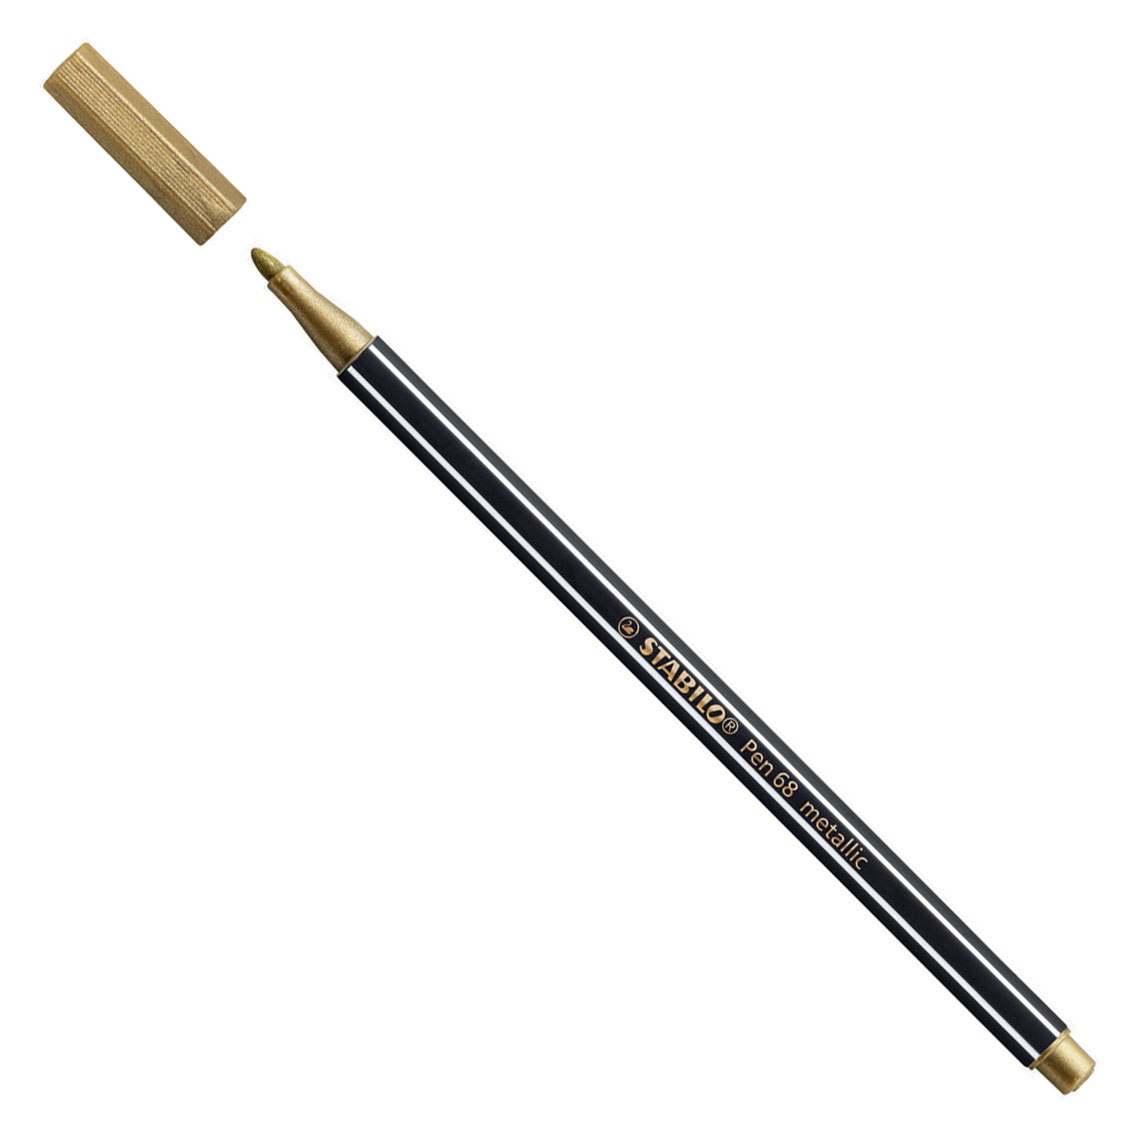 STABILO Pen 68 Metallic - Viltstift - Metallic Goud (68/810)